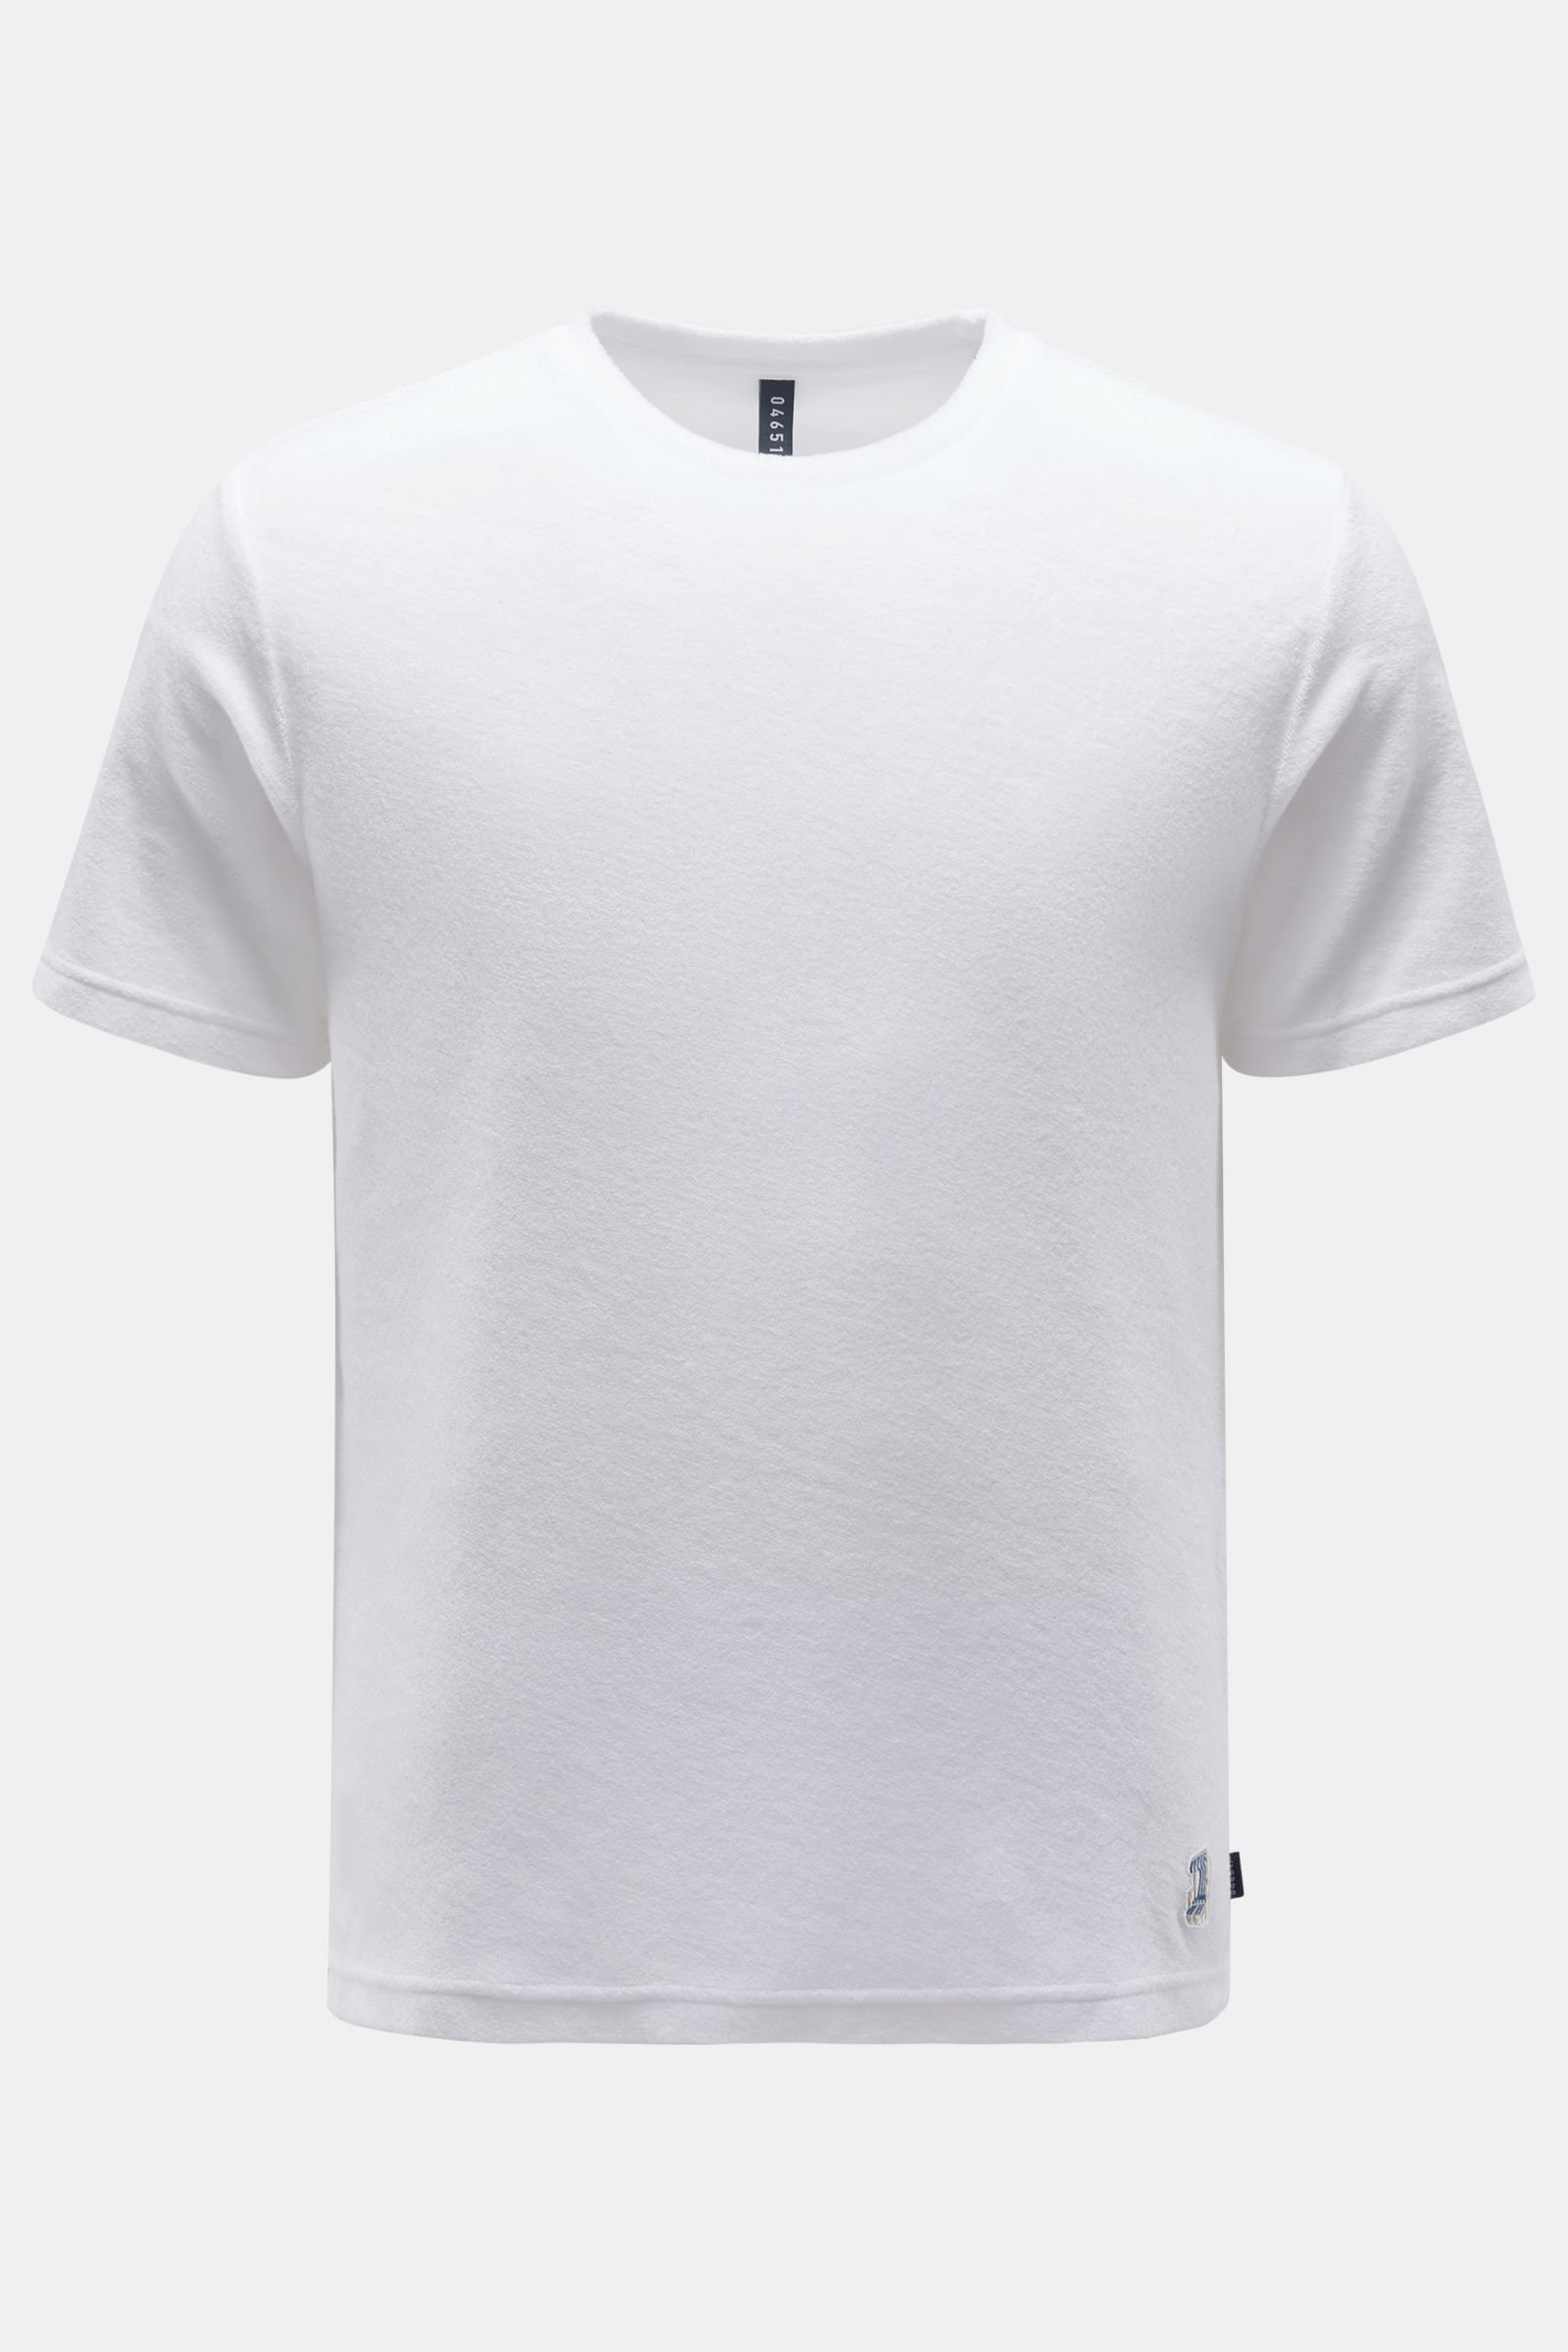 Frottee Rundhals-T-Shirt weiß